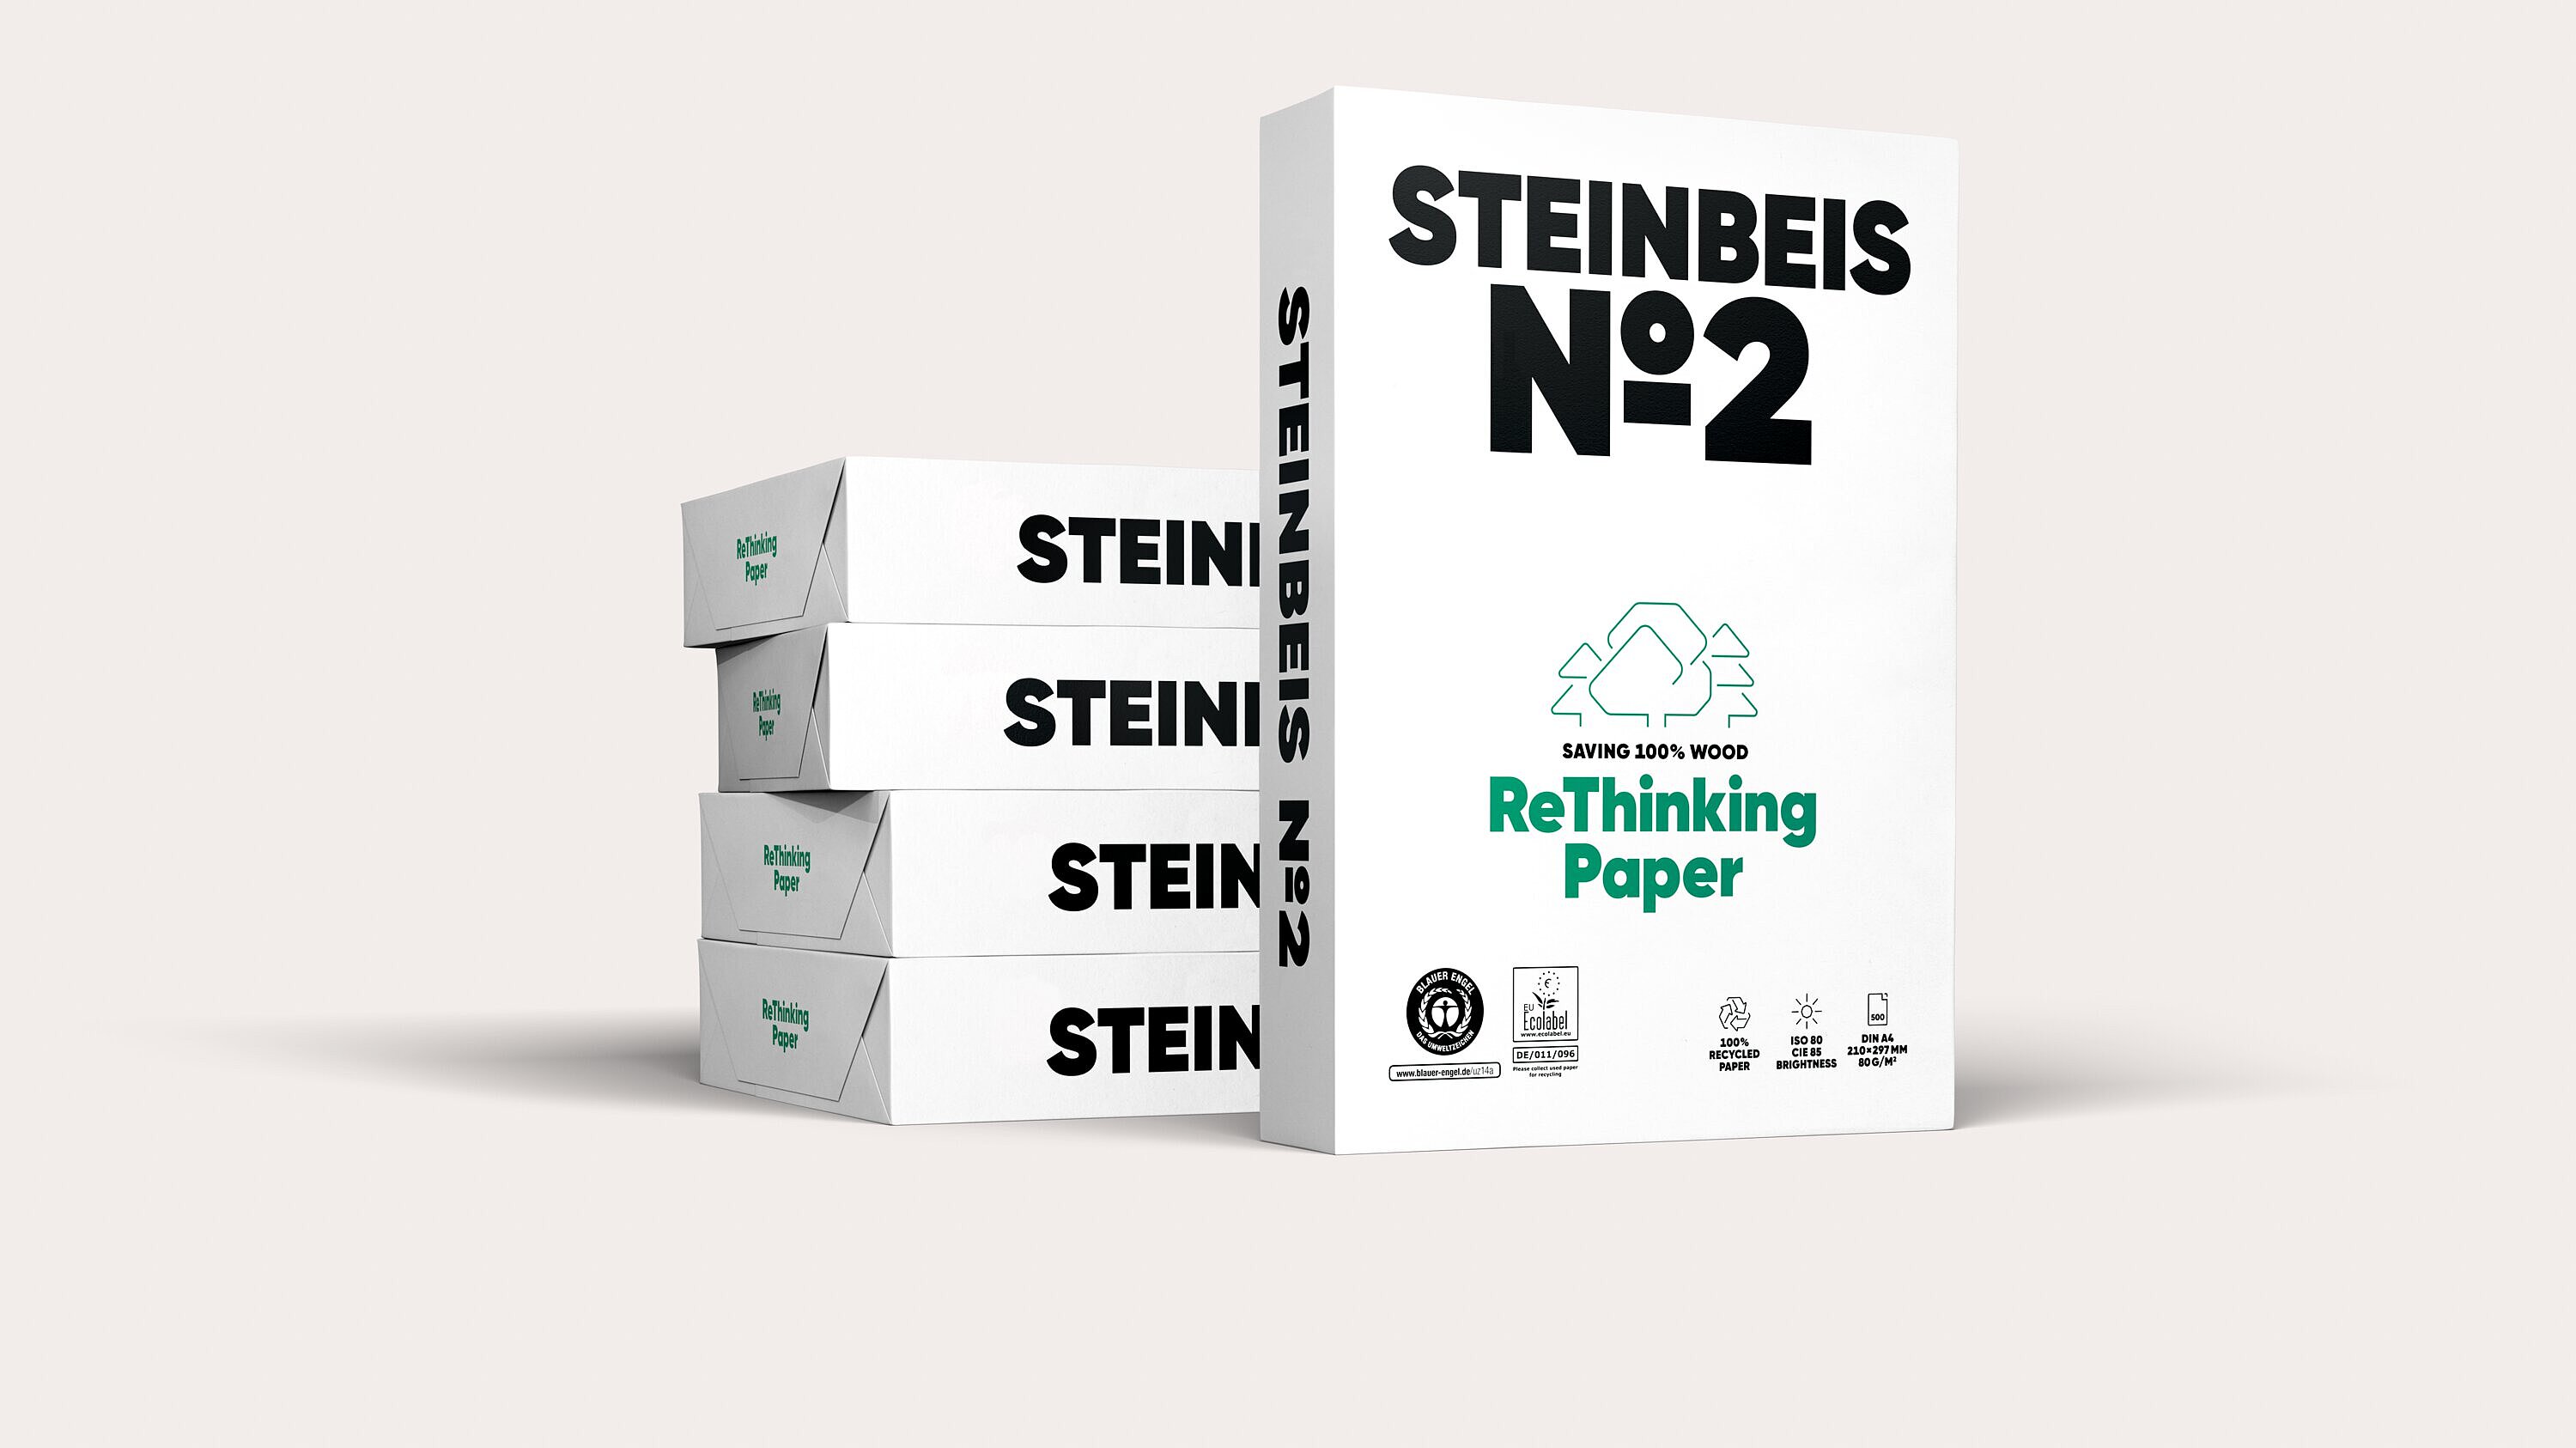 Druck- und Kopierpapier Steinbeis No. 2